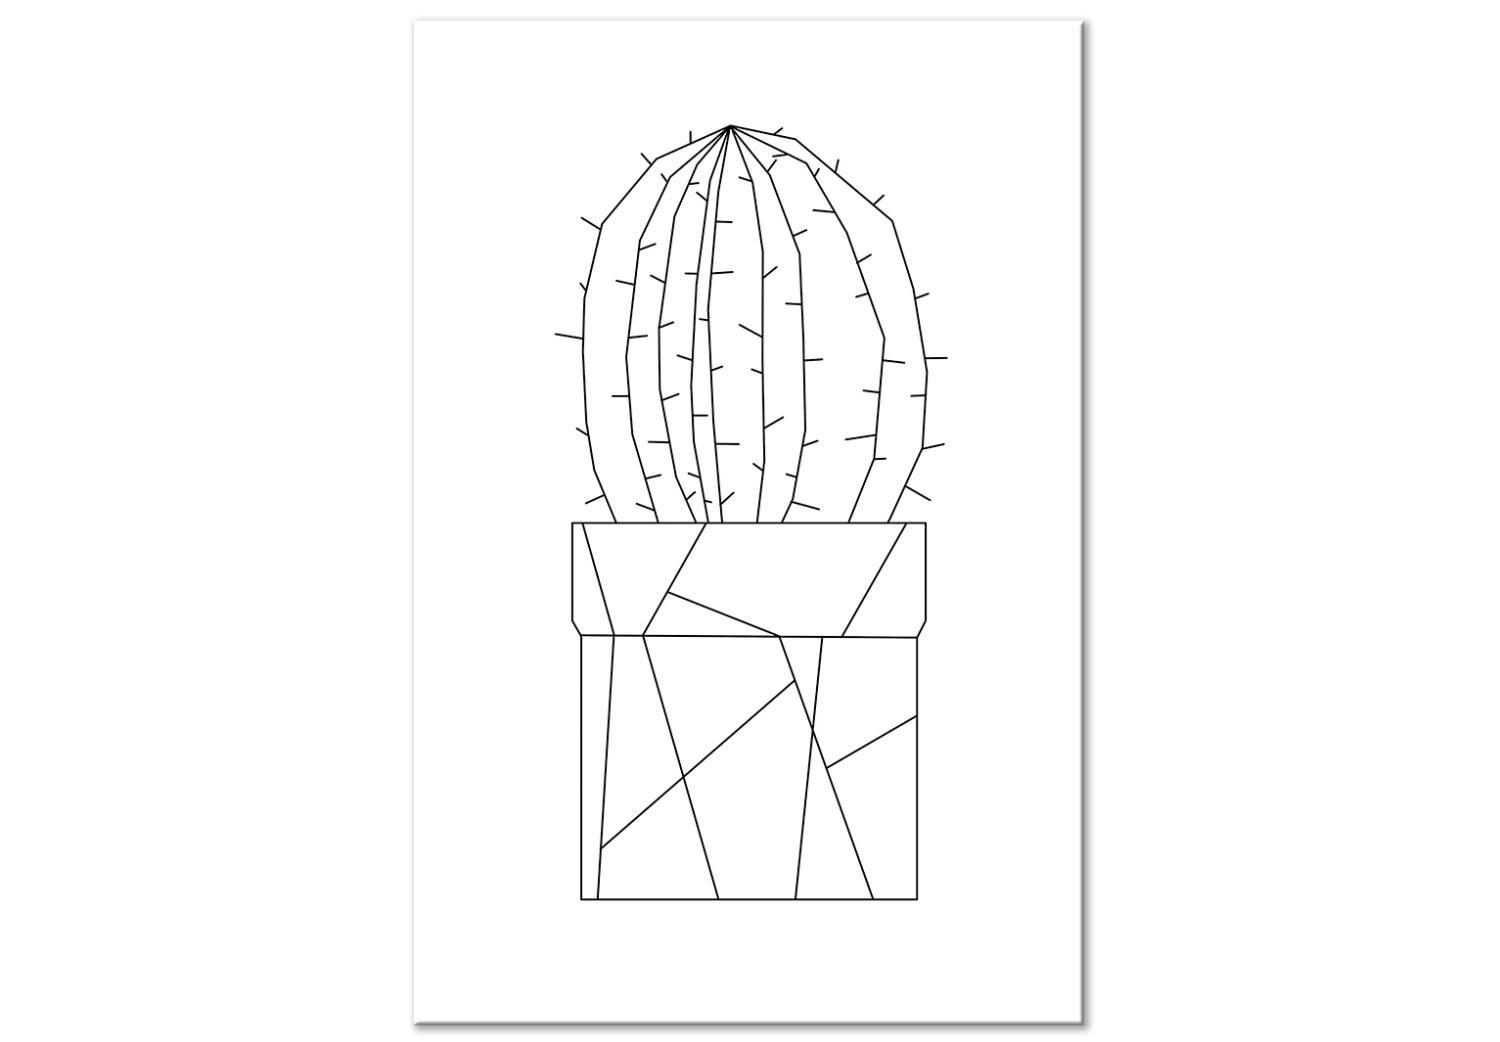 Cuadro Graphic Cactus (1 Part) Vertical